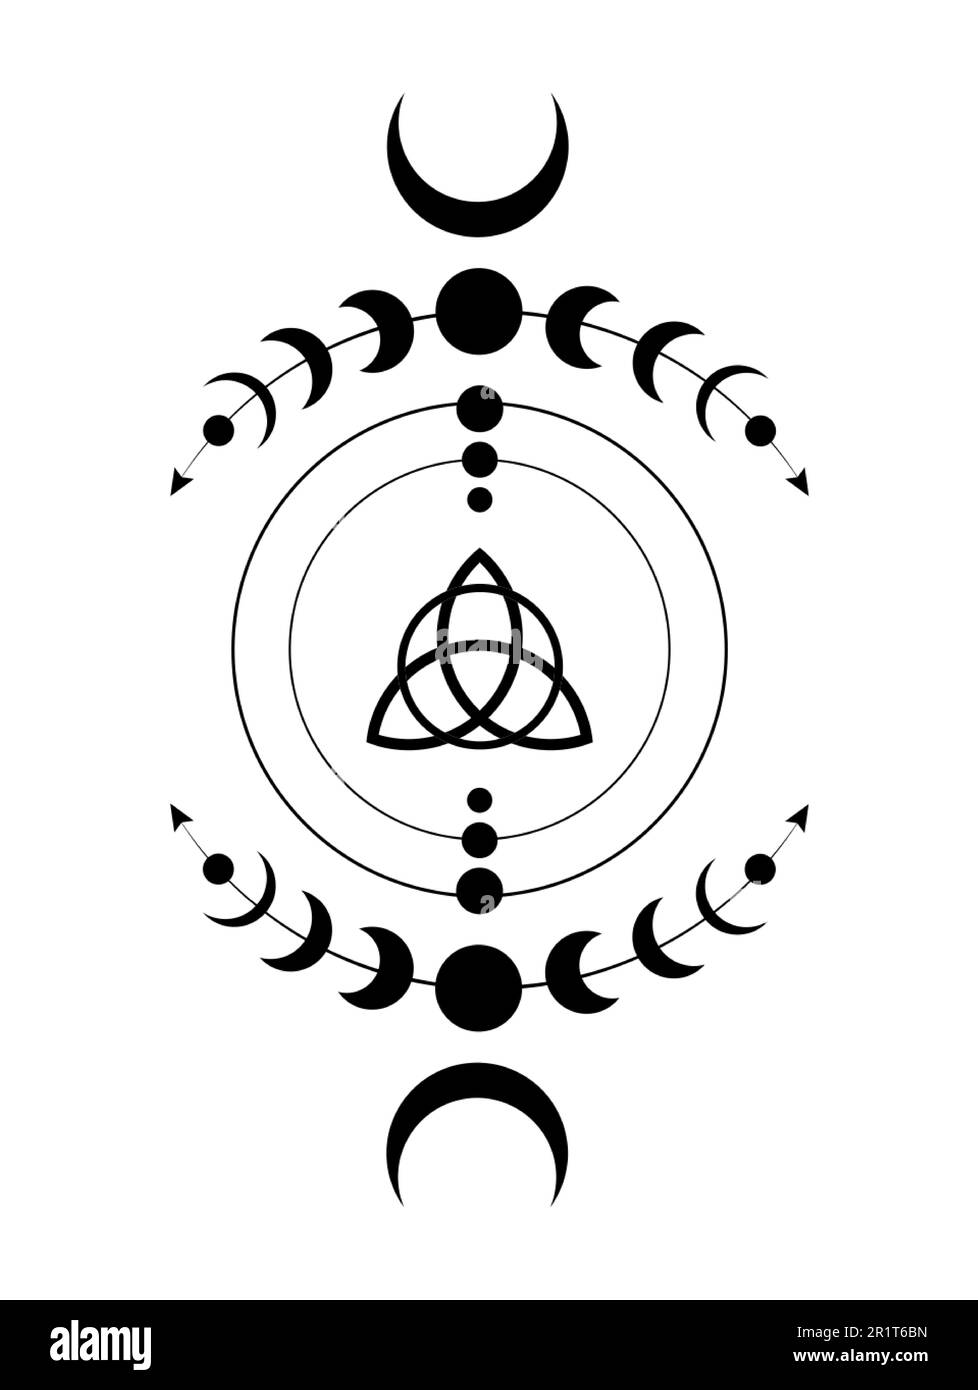 Phases mystiques de la Lune bordure du cadre de Wicca. Triquetra géométrie sacrée. Logo, symbole de la triple déesse Wiccan, cercle d'énergie, vecteur de style boho tattoo noir Illustration de Vecteur